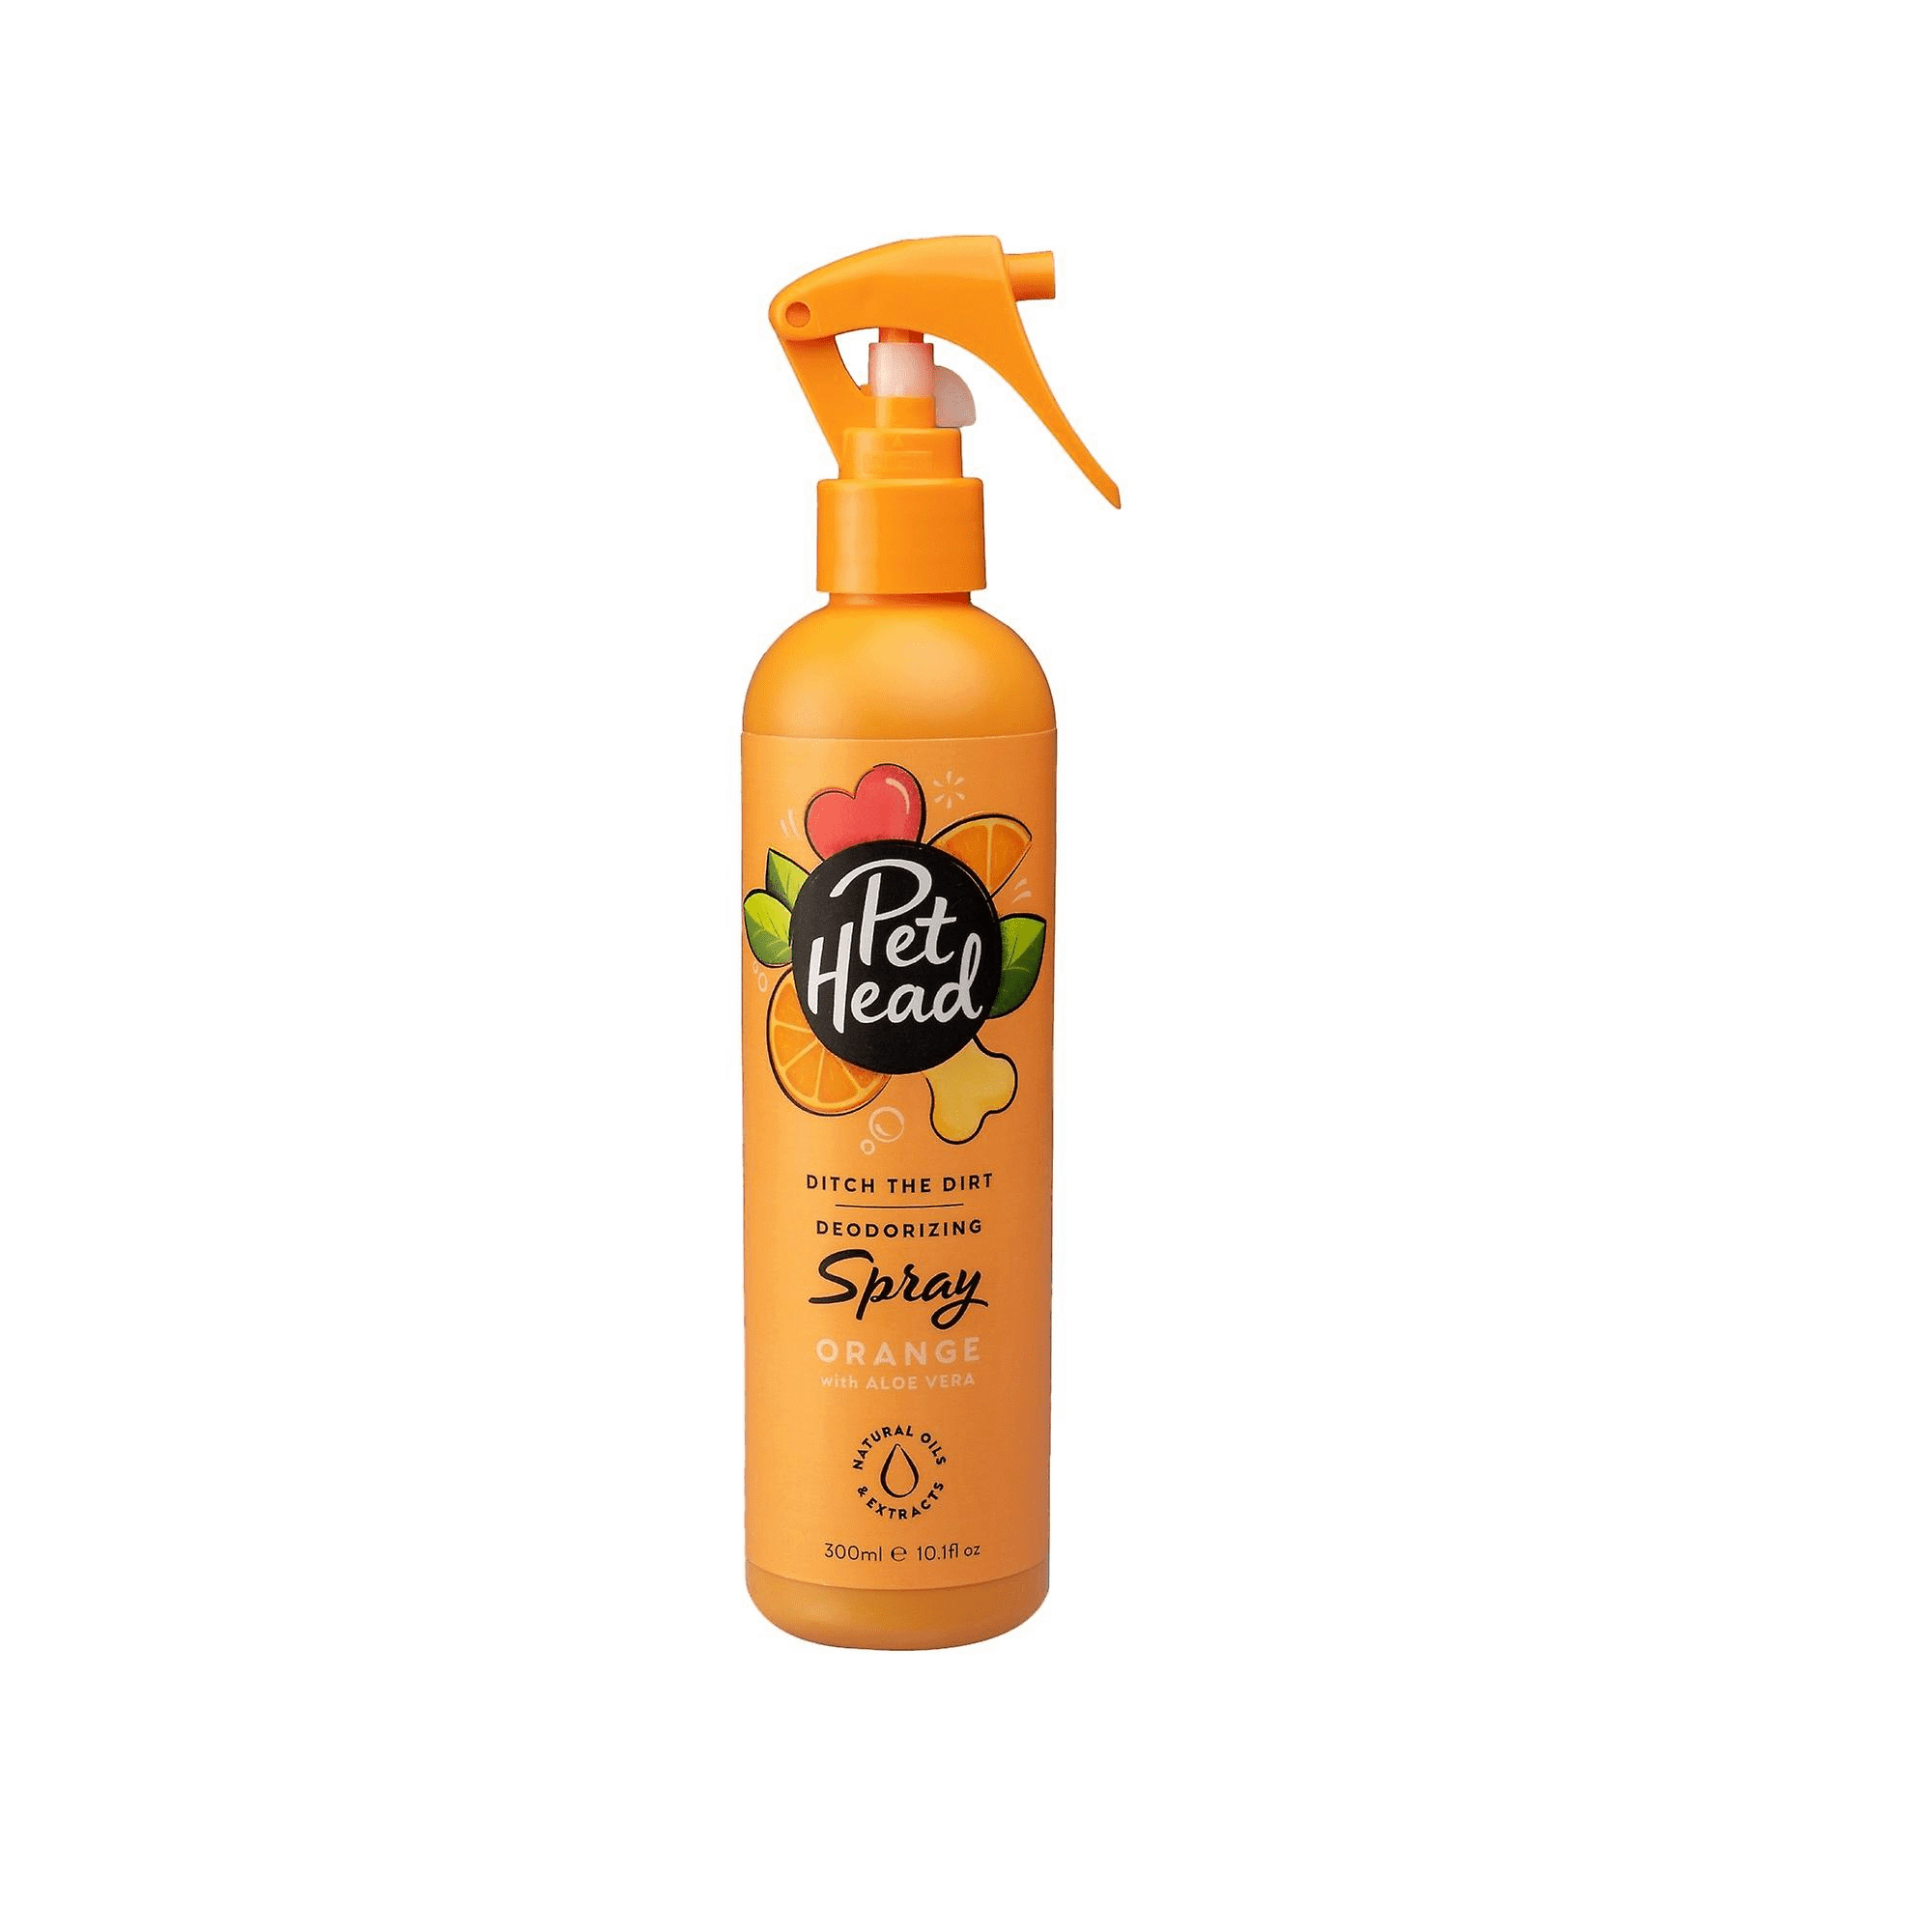 Spray cão - Especial desodorizante - 300ml - Ditch The Dirt Pet Head